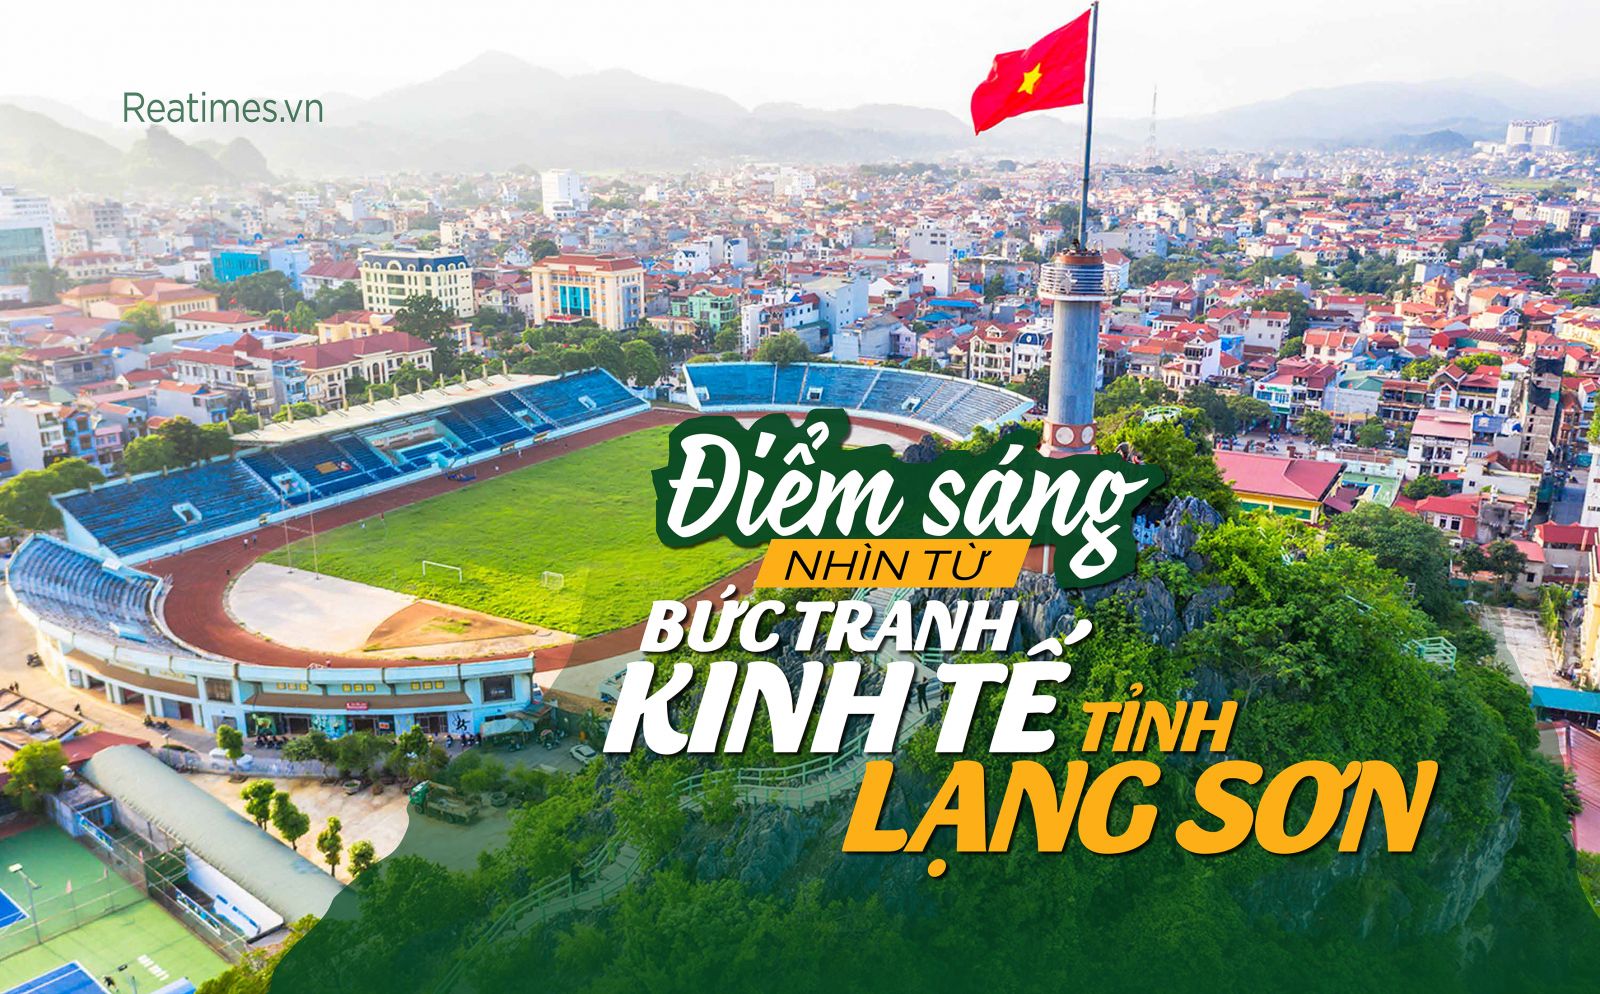 Điểm sáng nhìn từ bức tranh kinh tế tỉnh Lạng Sơn 